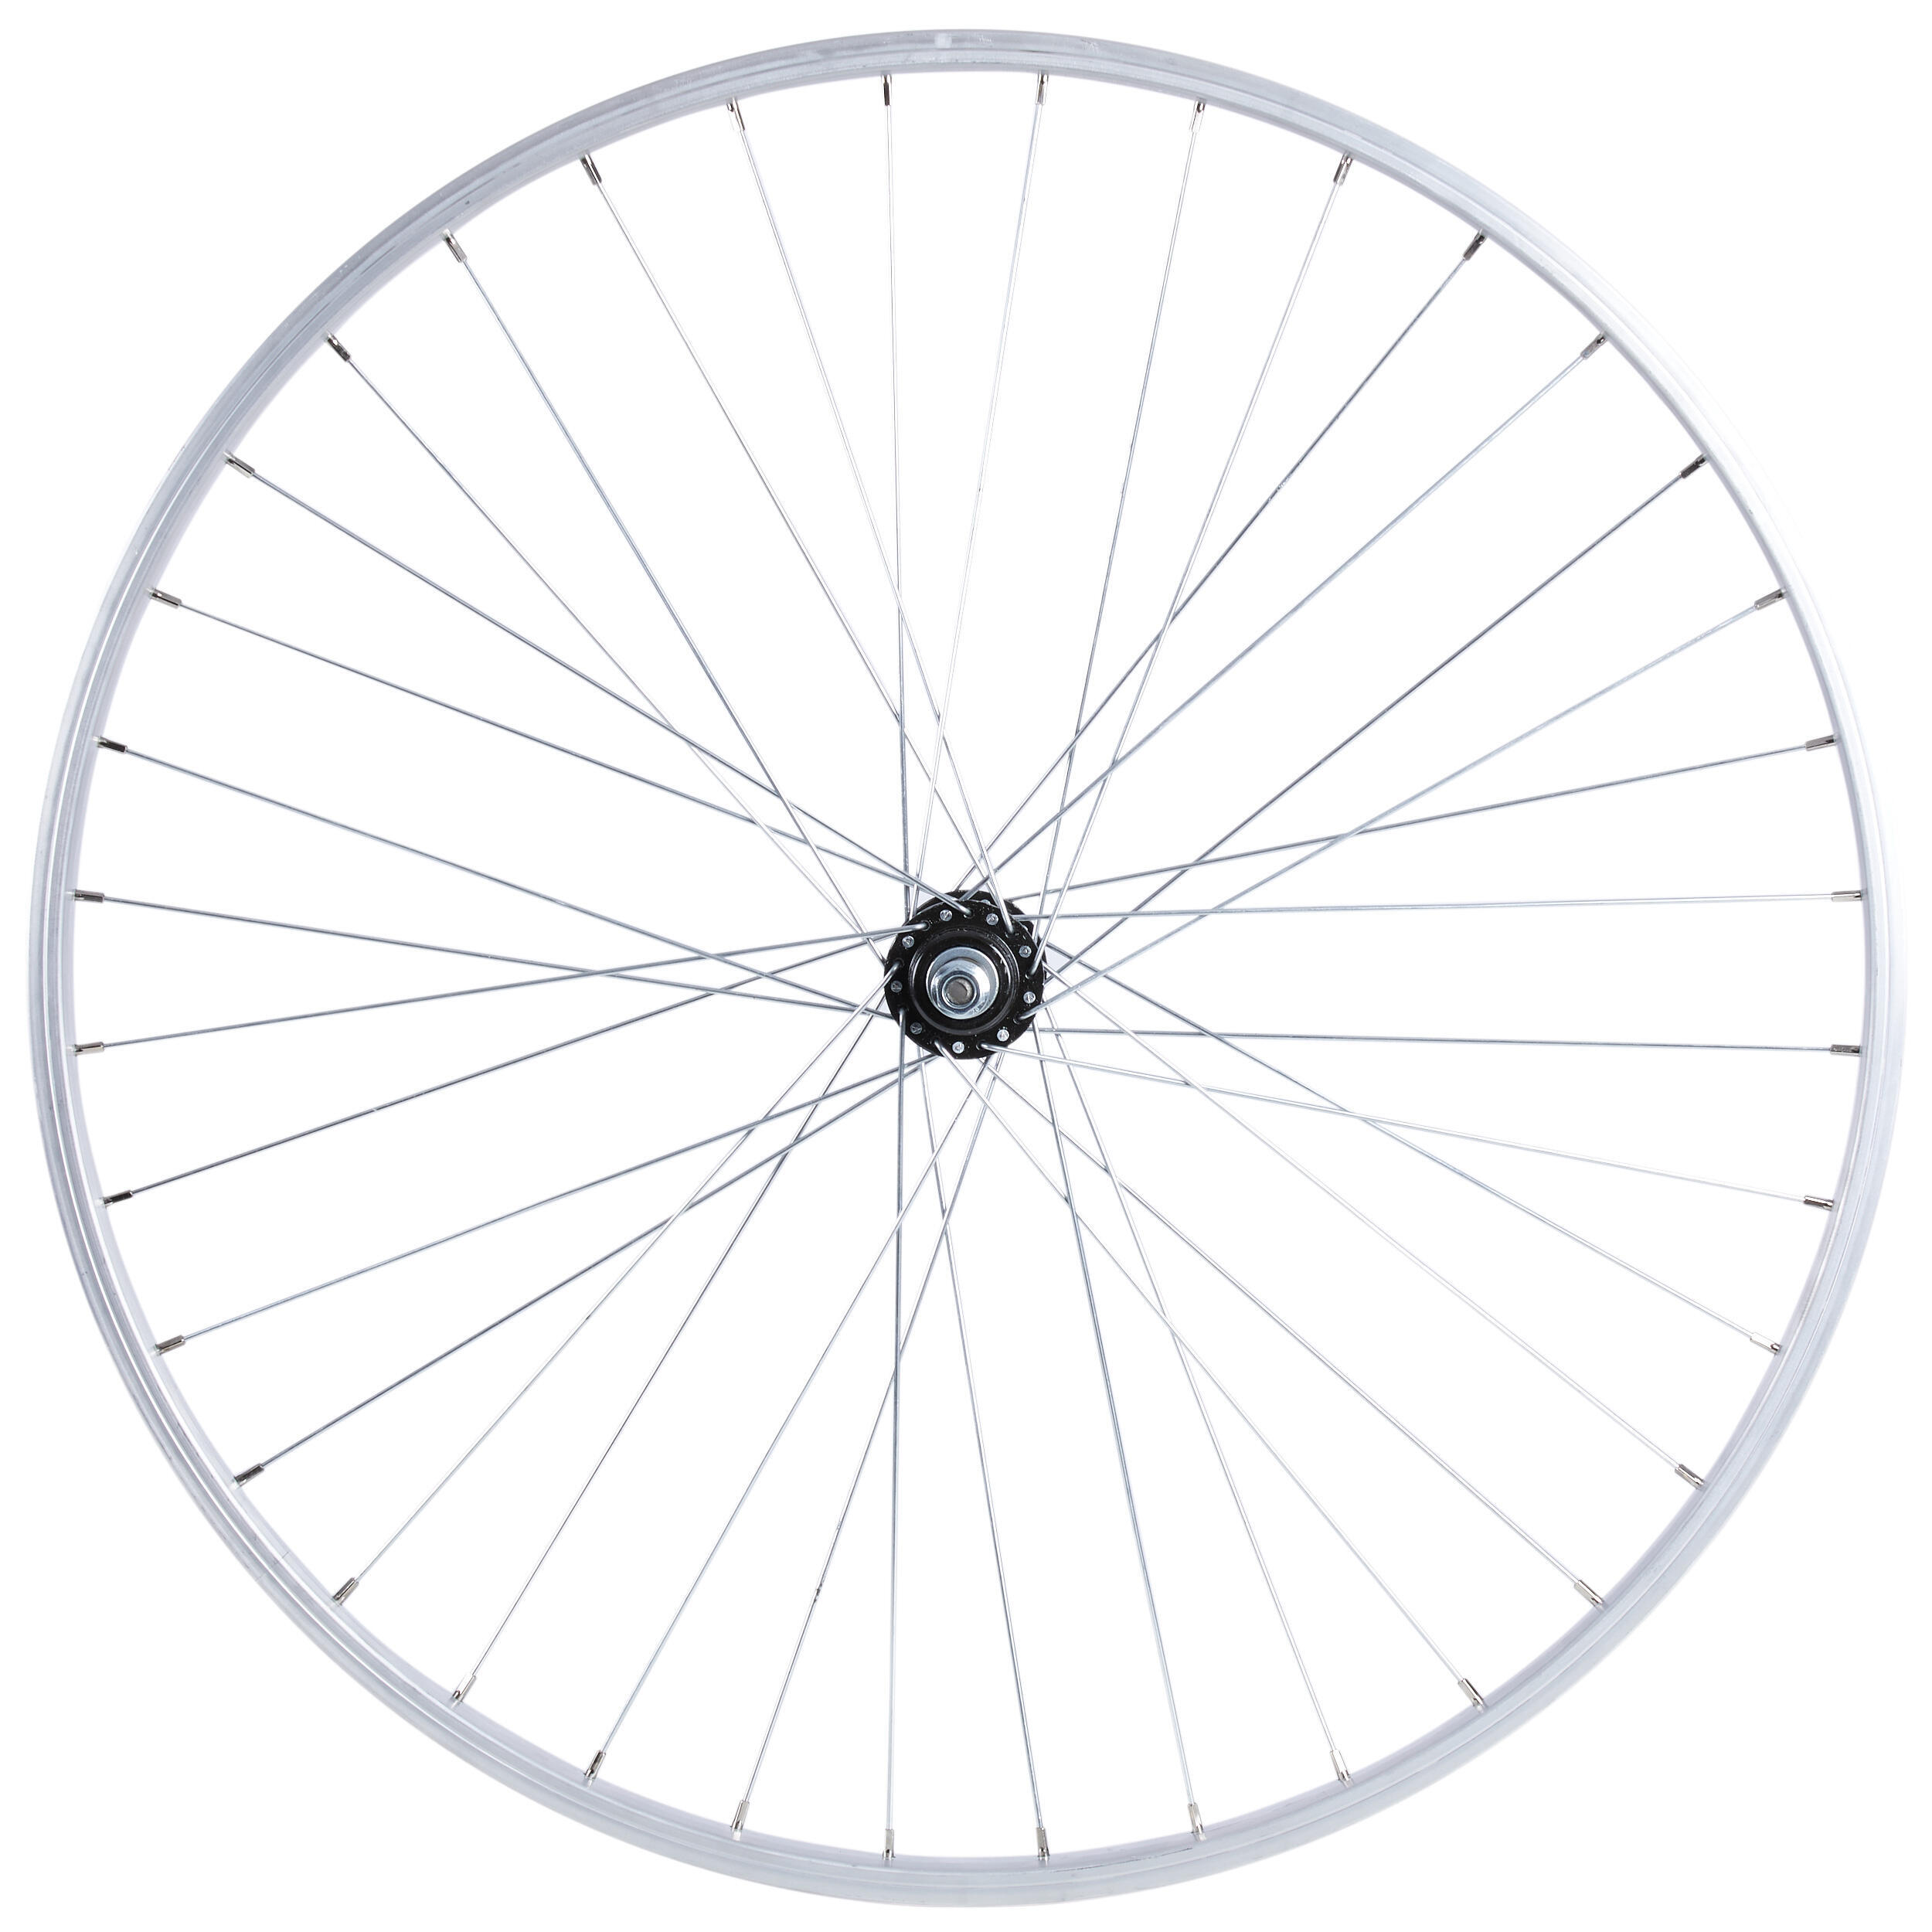 Городской велосипед с задним колесом 28 дюймов RL SP 1x Elops 100 серебристый, серебро